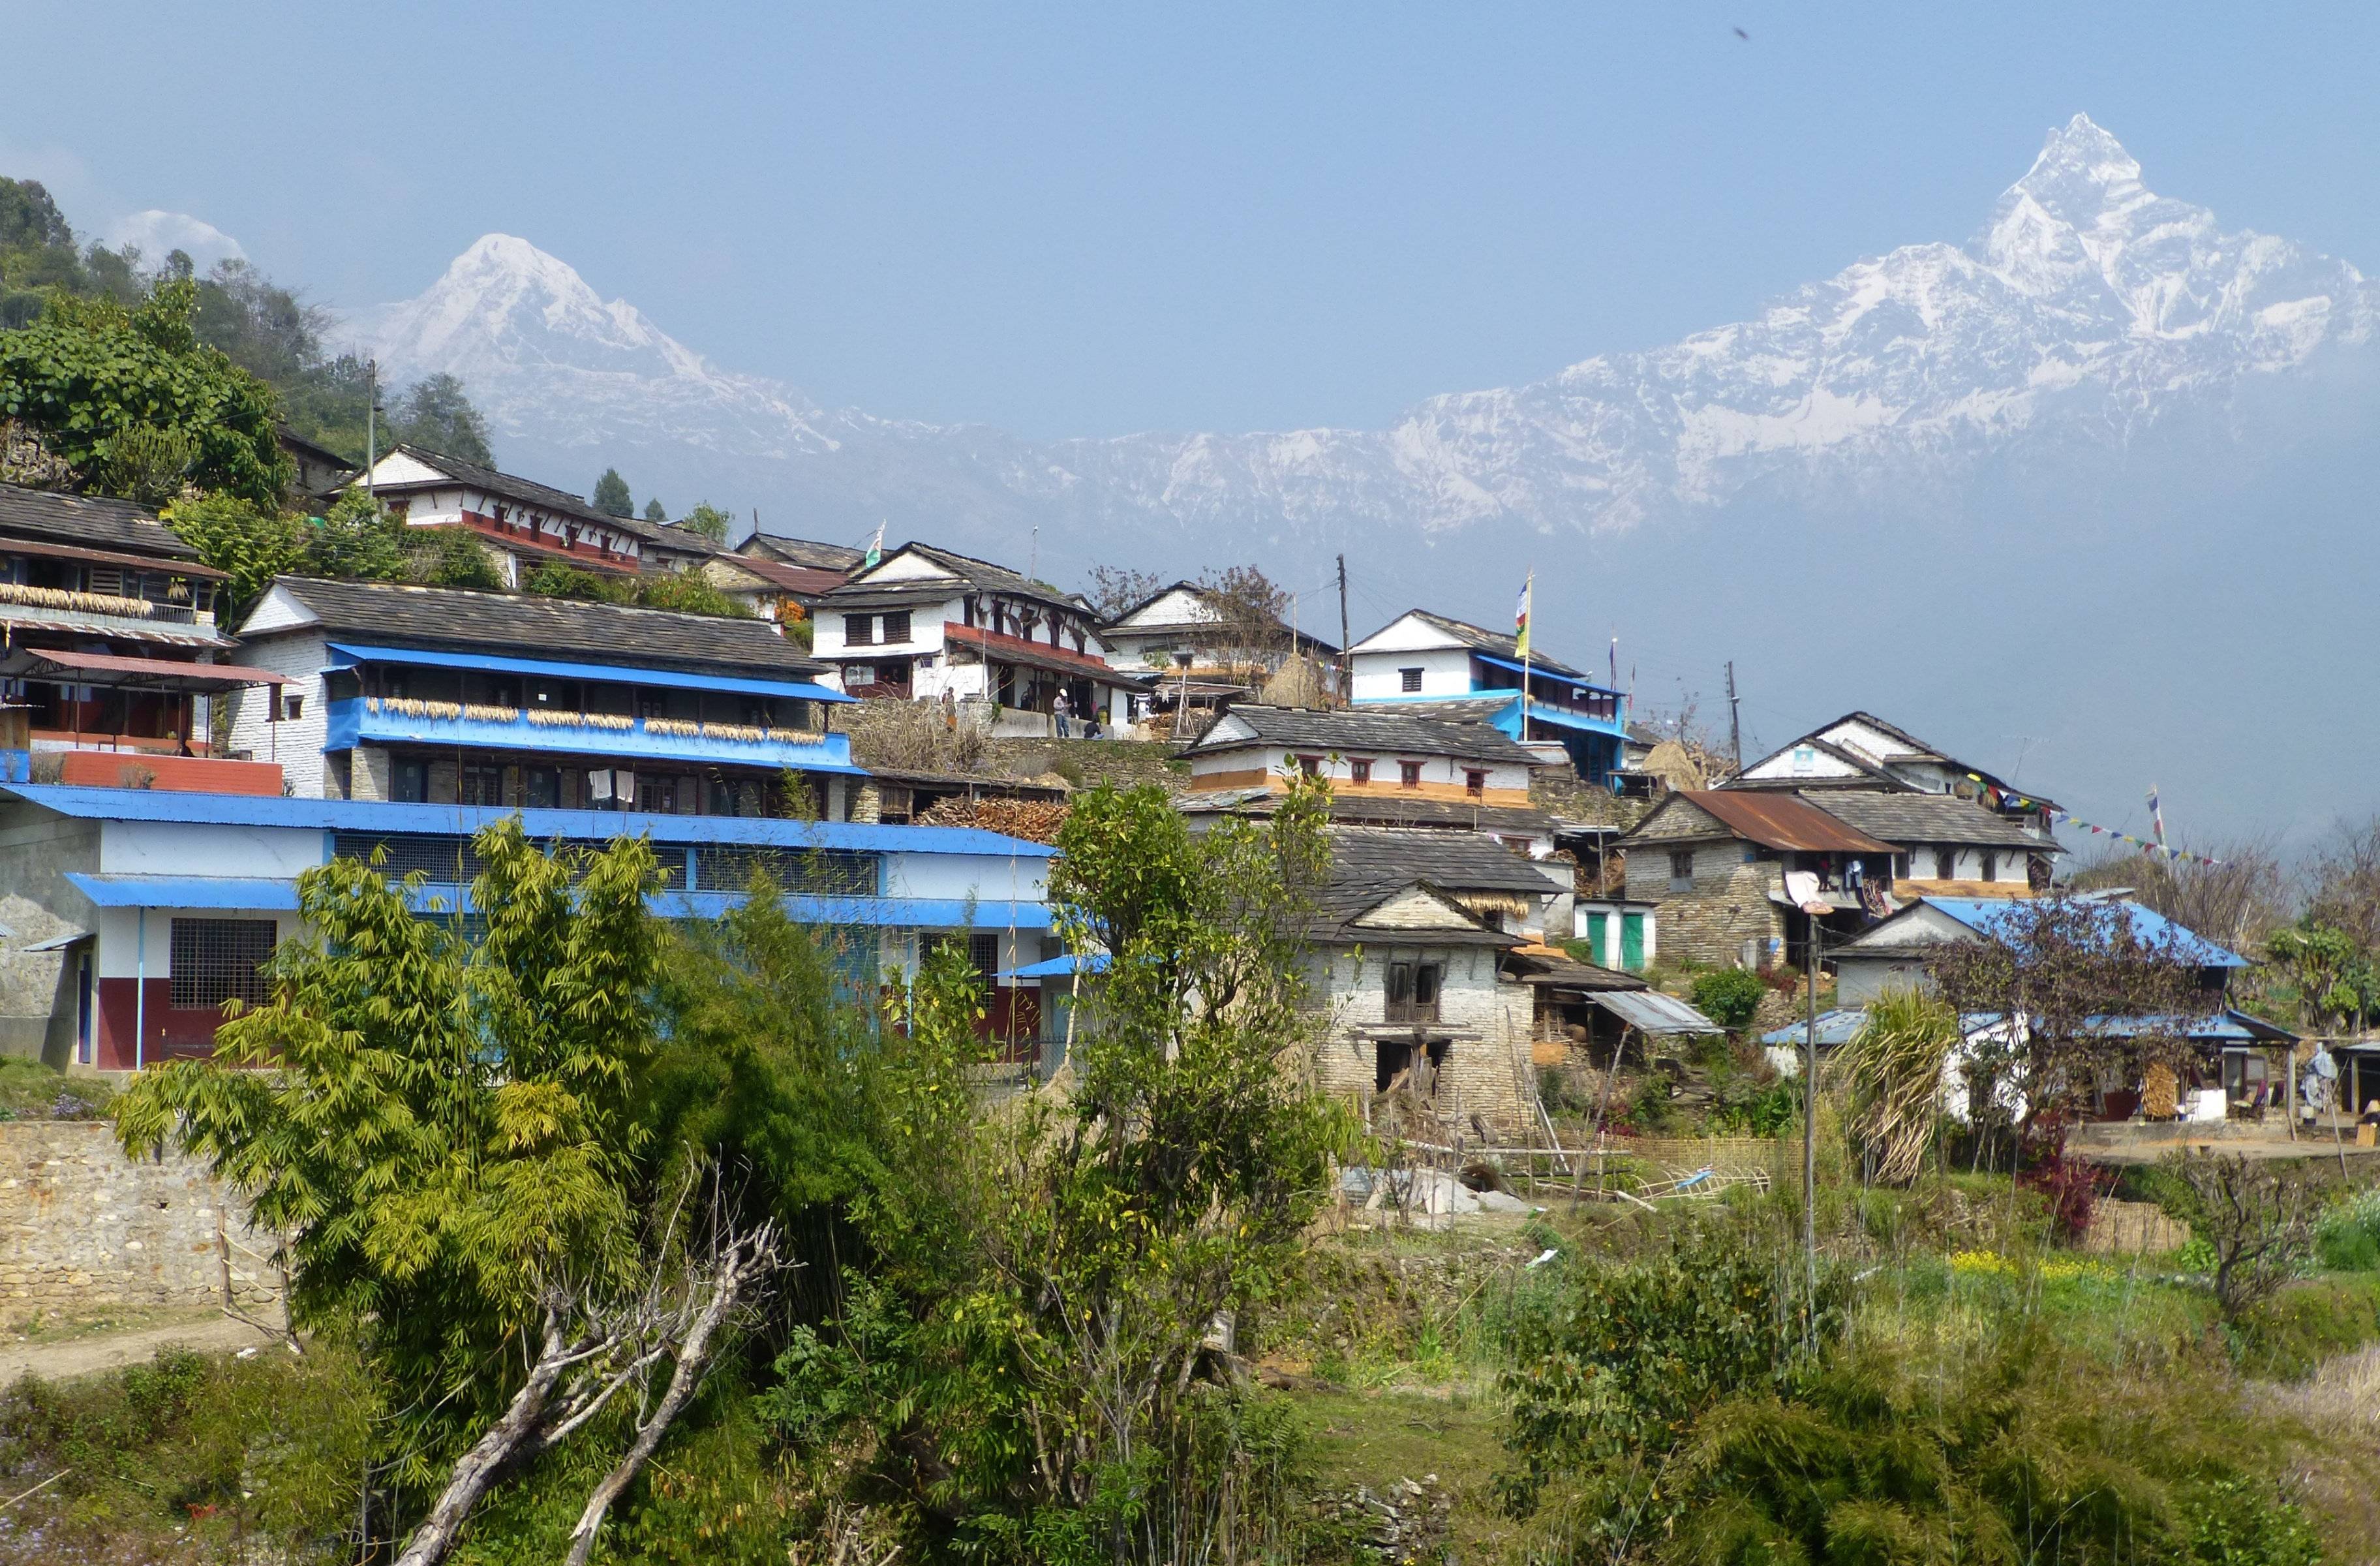 Pokhara – Khoramukh – Luwang (1460 m)